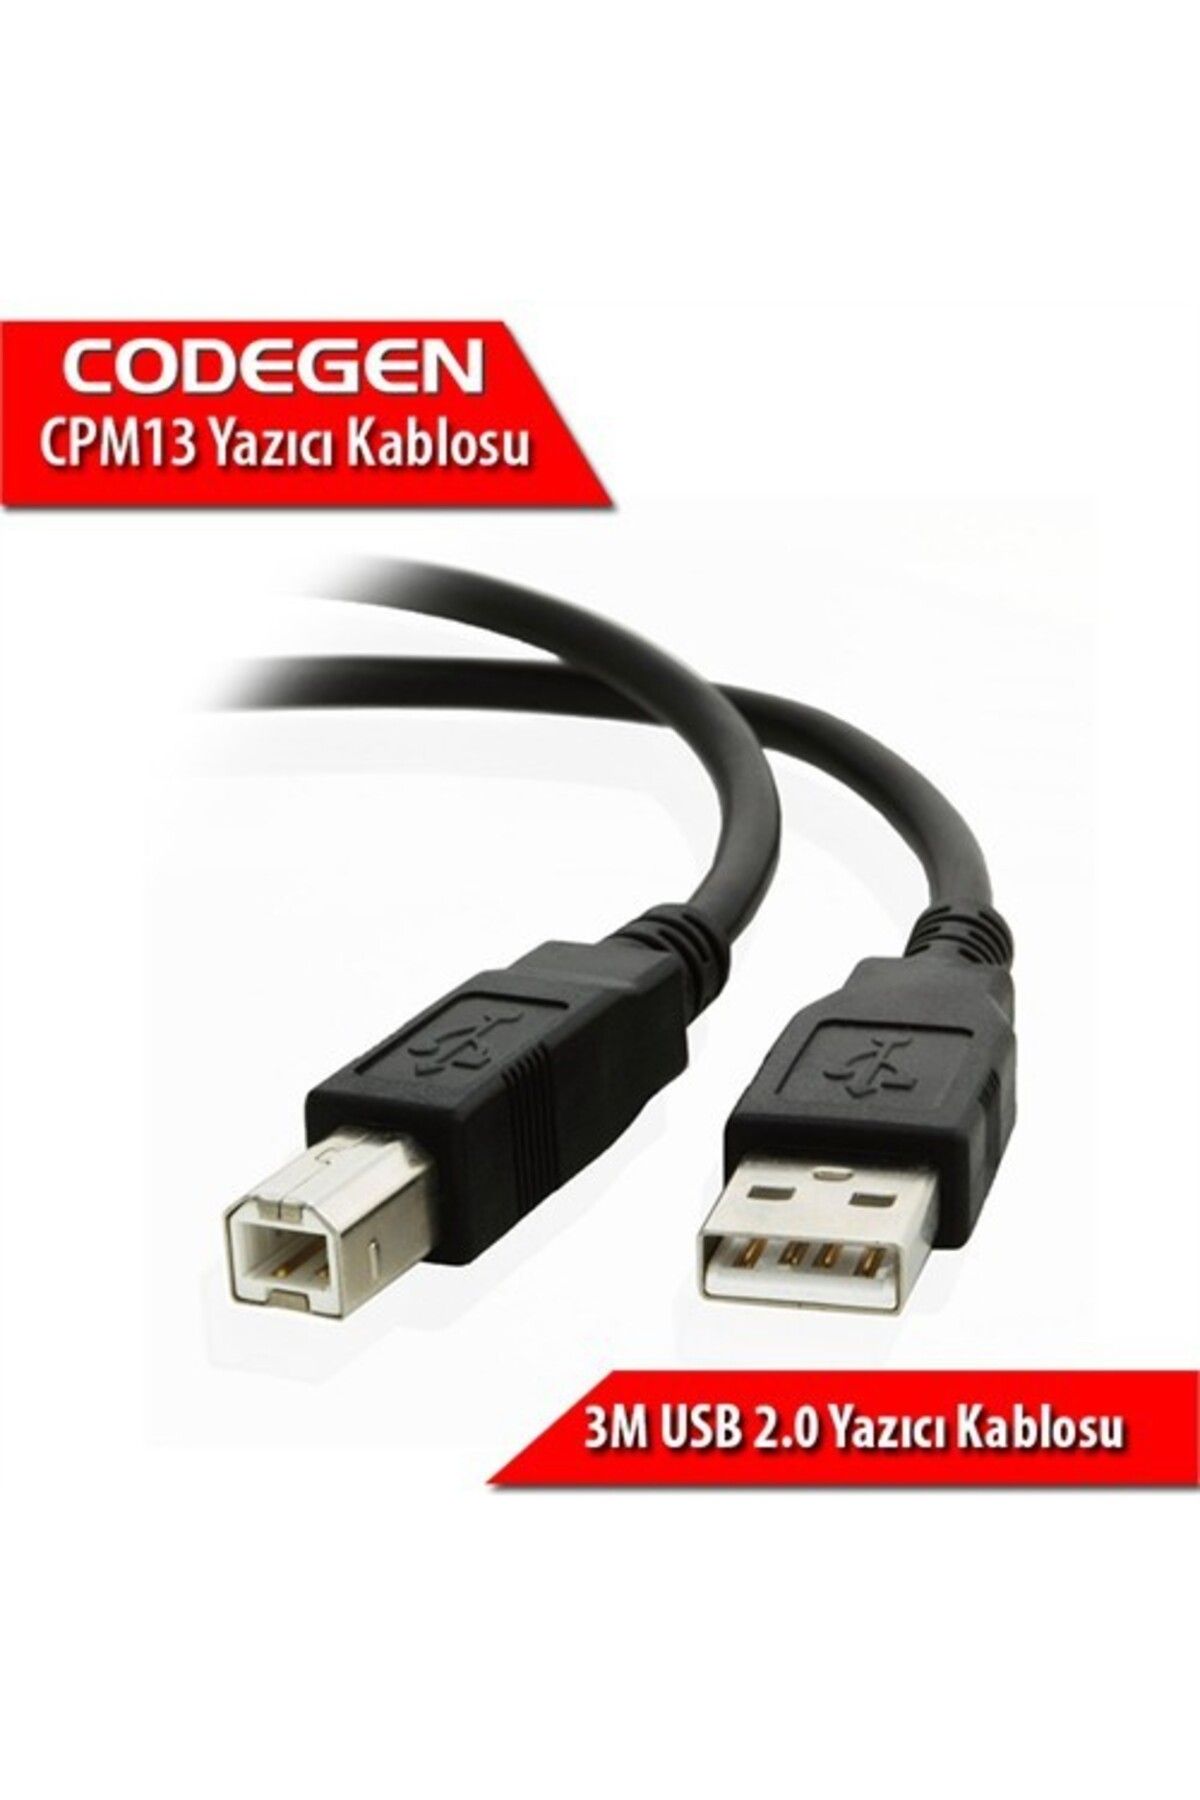 CODEGEN Usb 2.0 B Tip 3 Metre Printer Ve Data Yazıcı Kablosu Cpm13